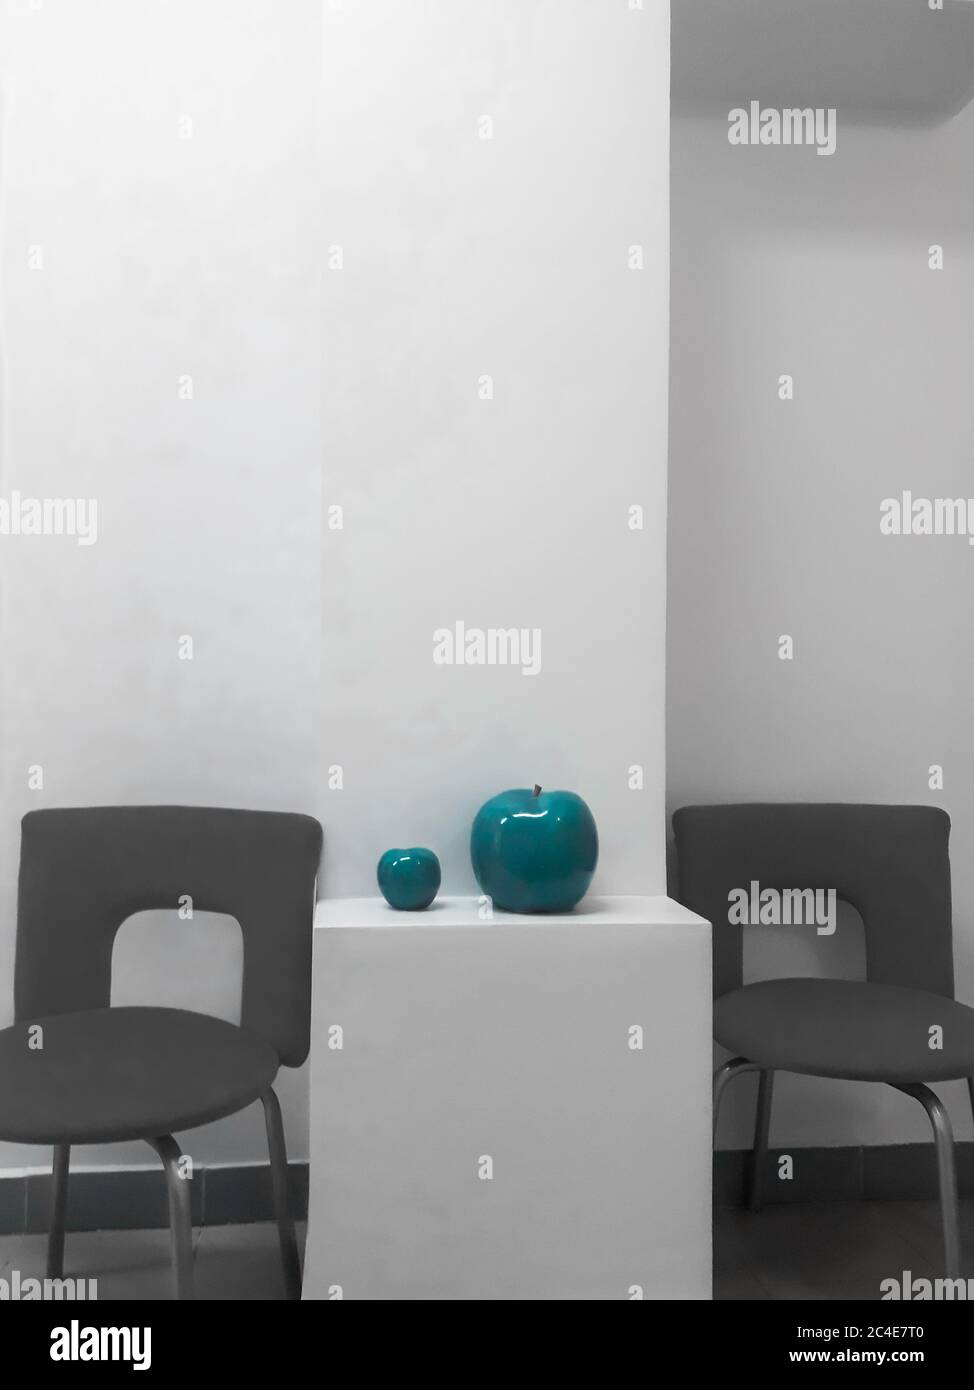 Details der Innenausstattung - eine weiße Wand, Bürostühle und zwei Keramik-Äpfel in türkisfarbener Farbe. Stockfoto